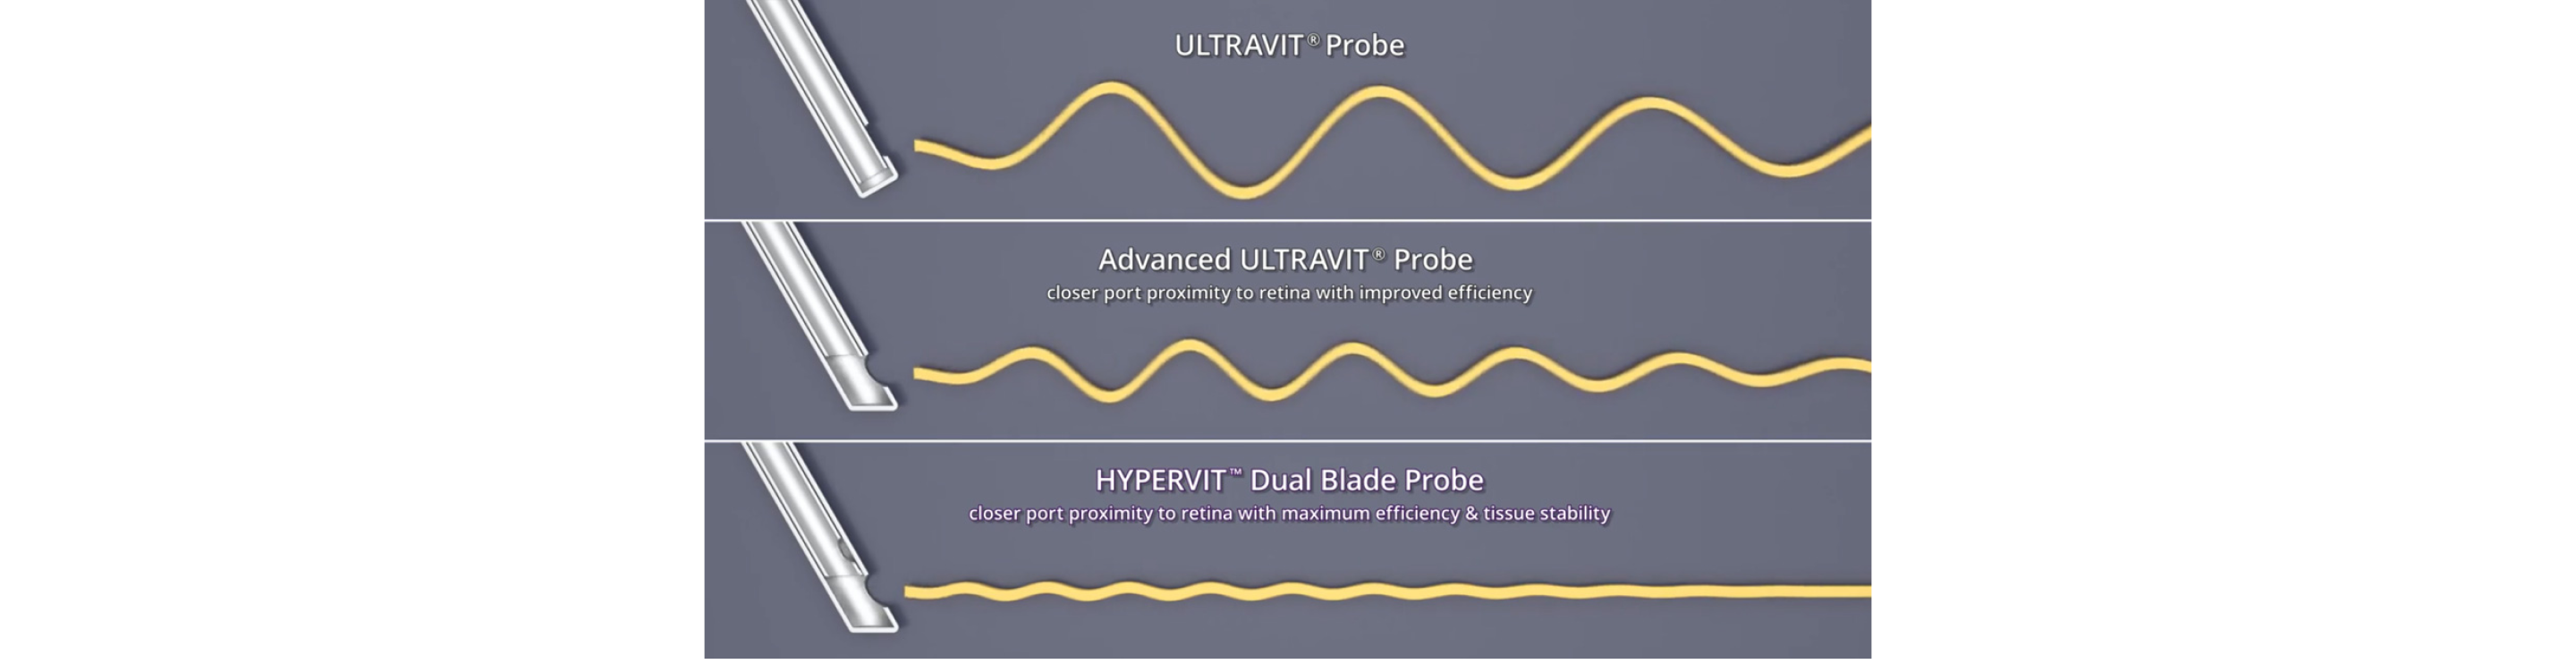 ULTRAVITプローブ、Advanced ULTRAVITプローブ、HYPERVITデュアルブレードプローブの流体乱流を比較したイラスト。HYPERVITは流体の乱流が最も少ないと考えれます。 白い再生ボタンにより、これがビデオが再生されます。